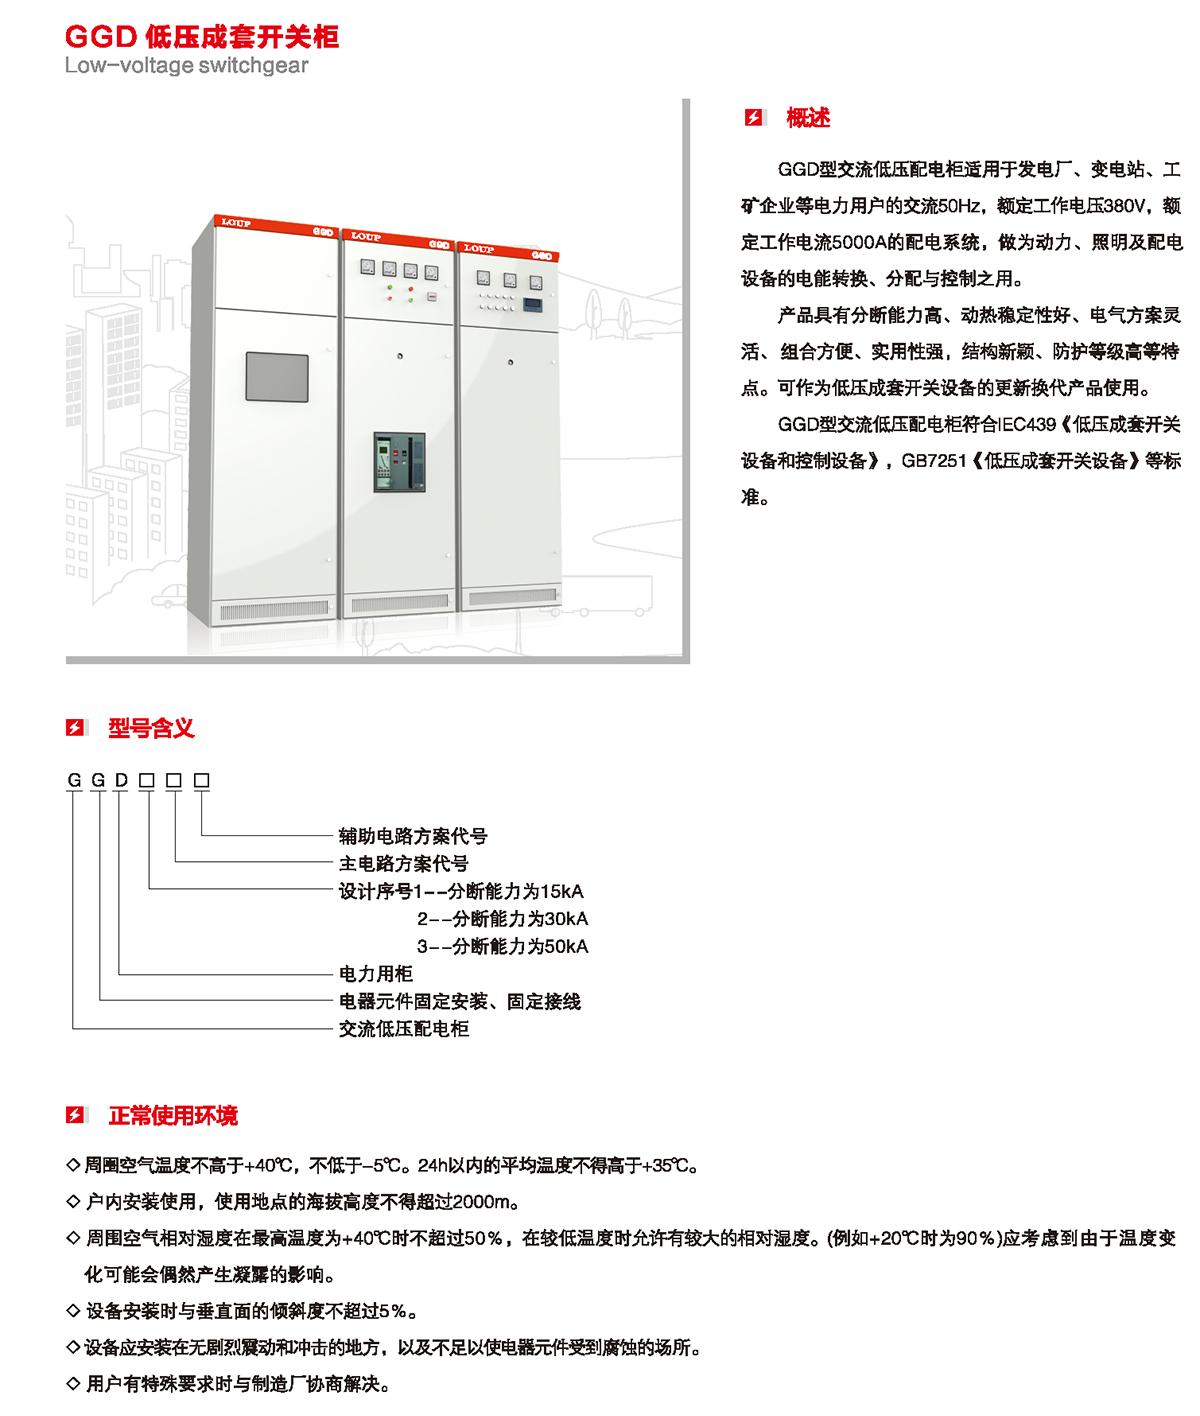 GGD低壓成套開關柜概述、型號含義、正常使用環境